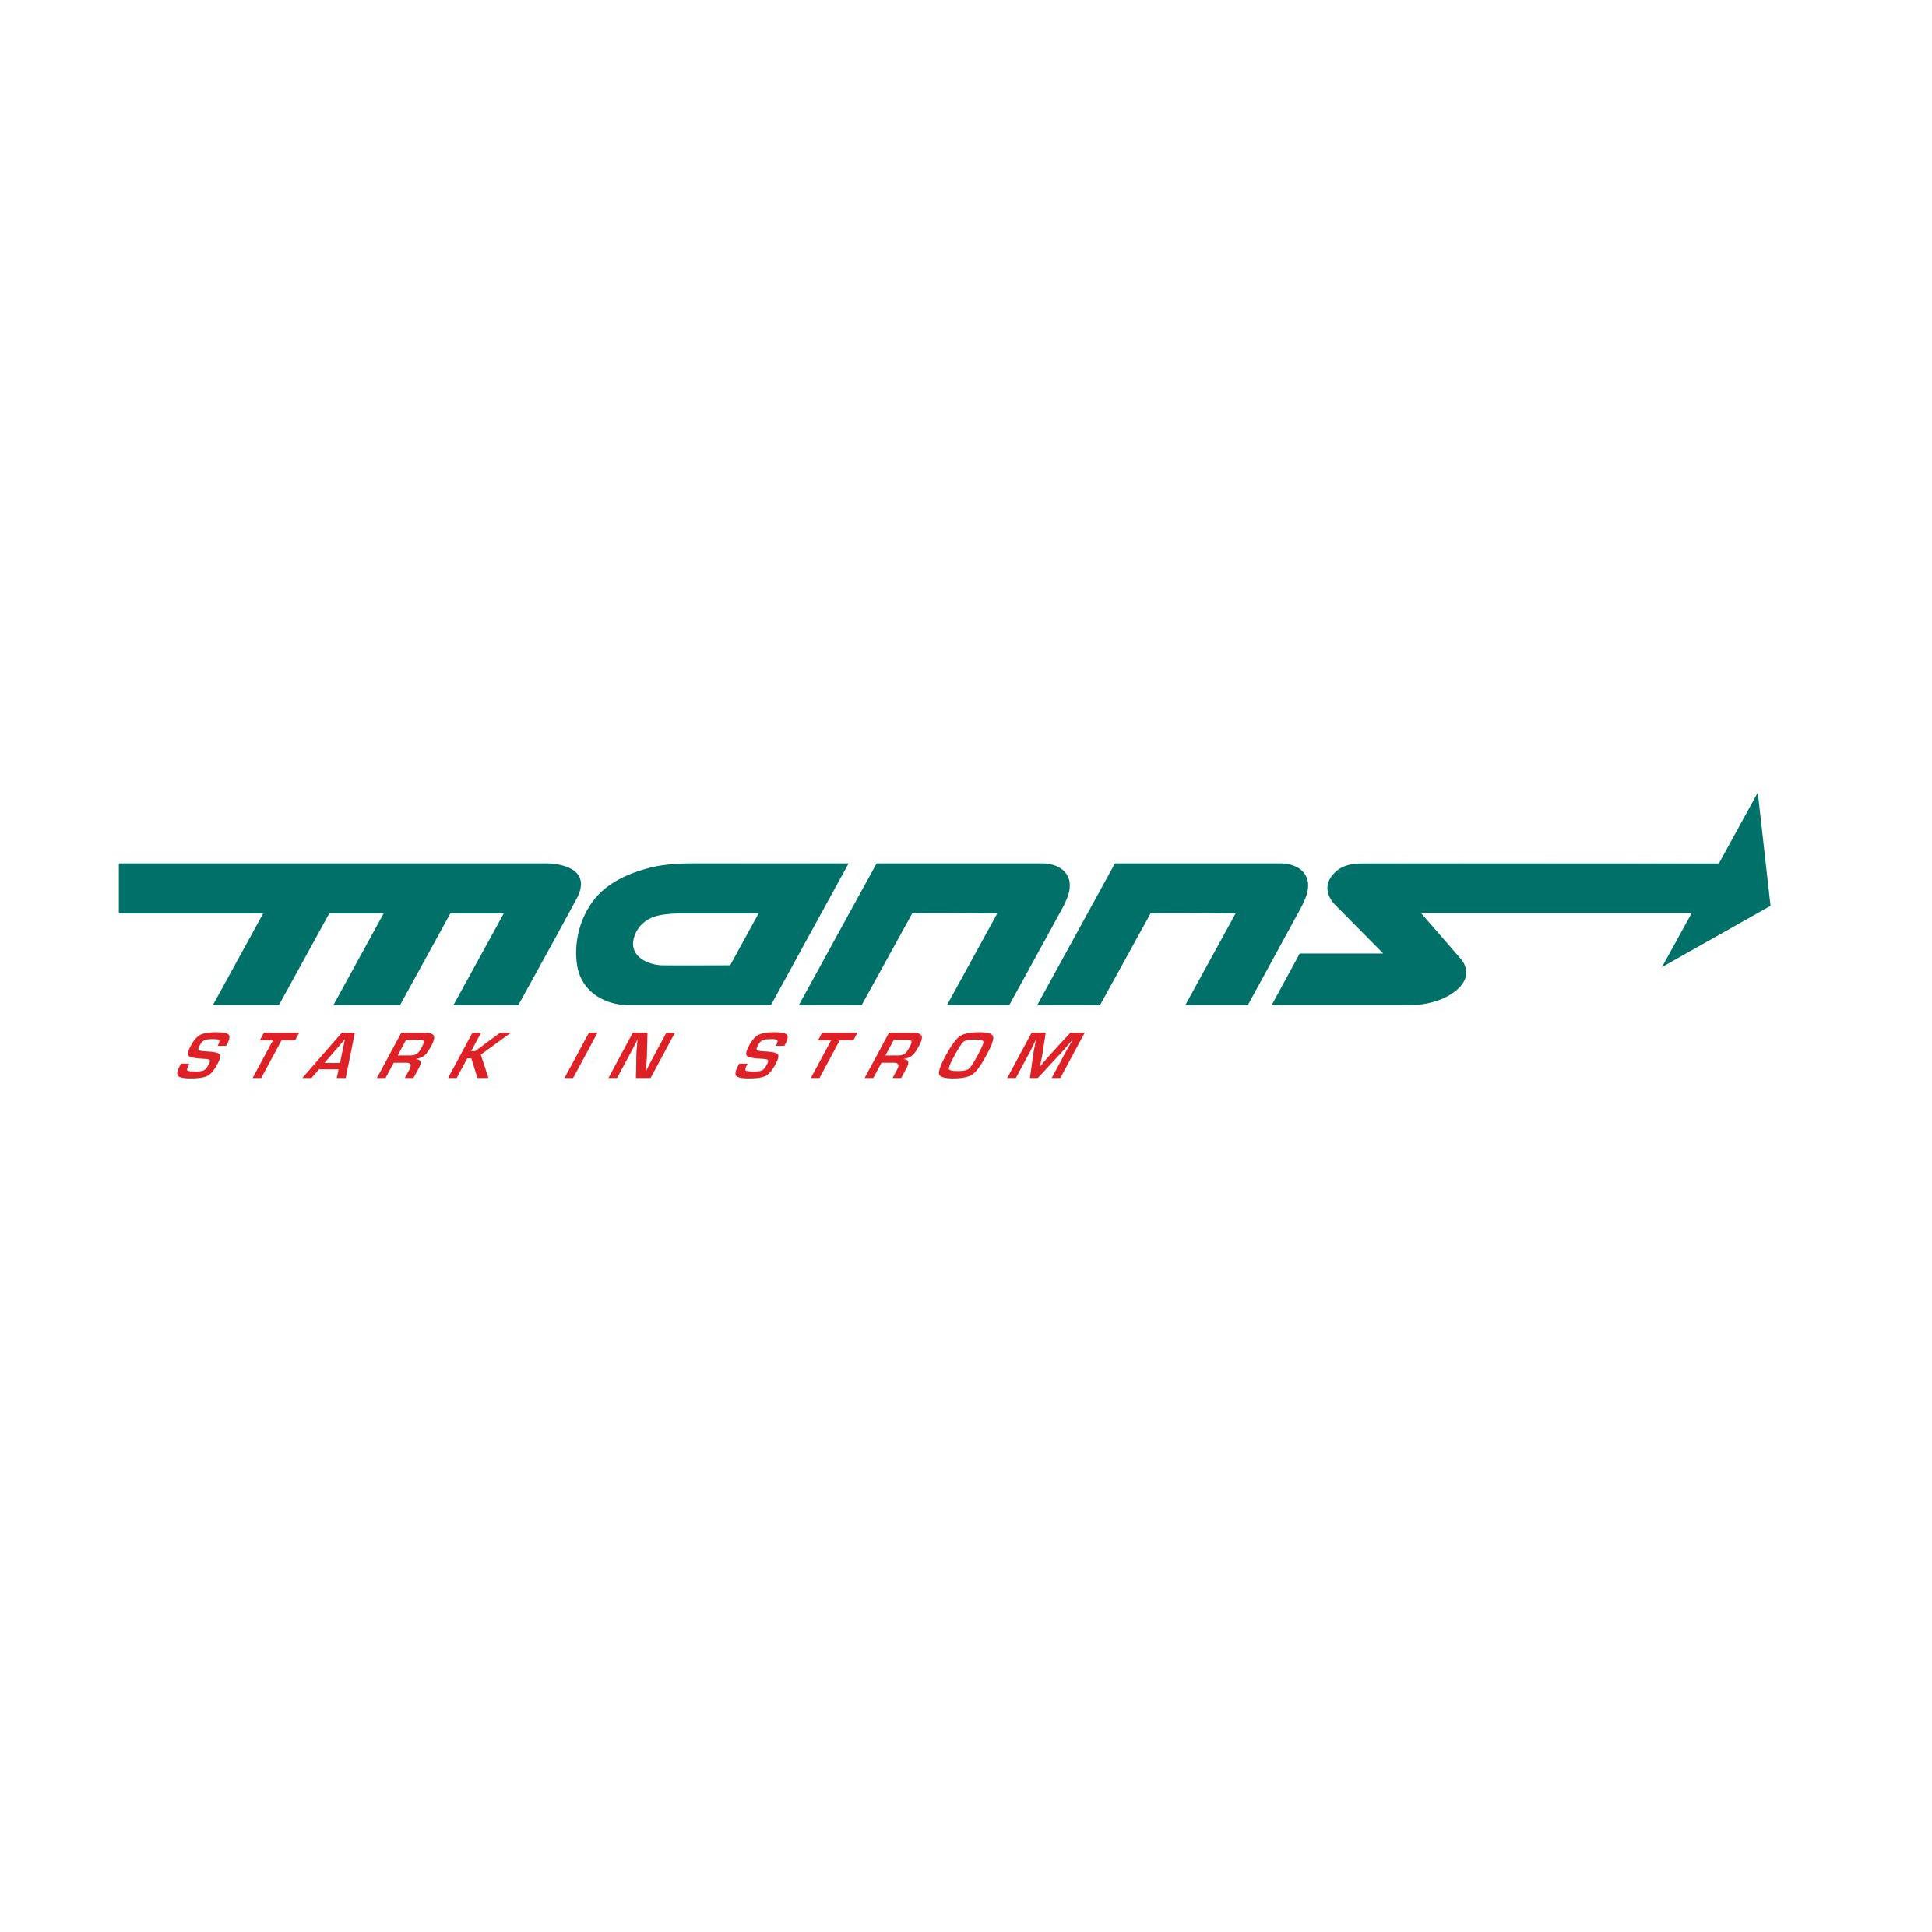 Elektro Manns Bonn Logo